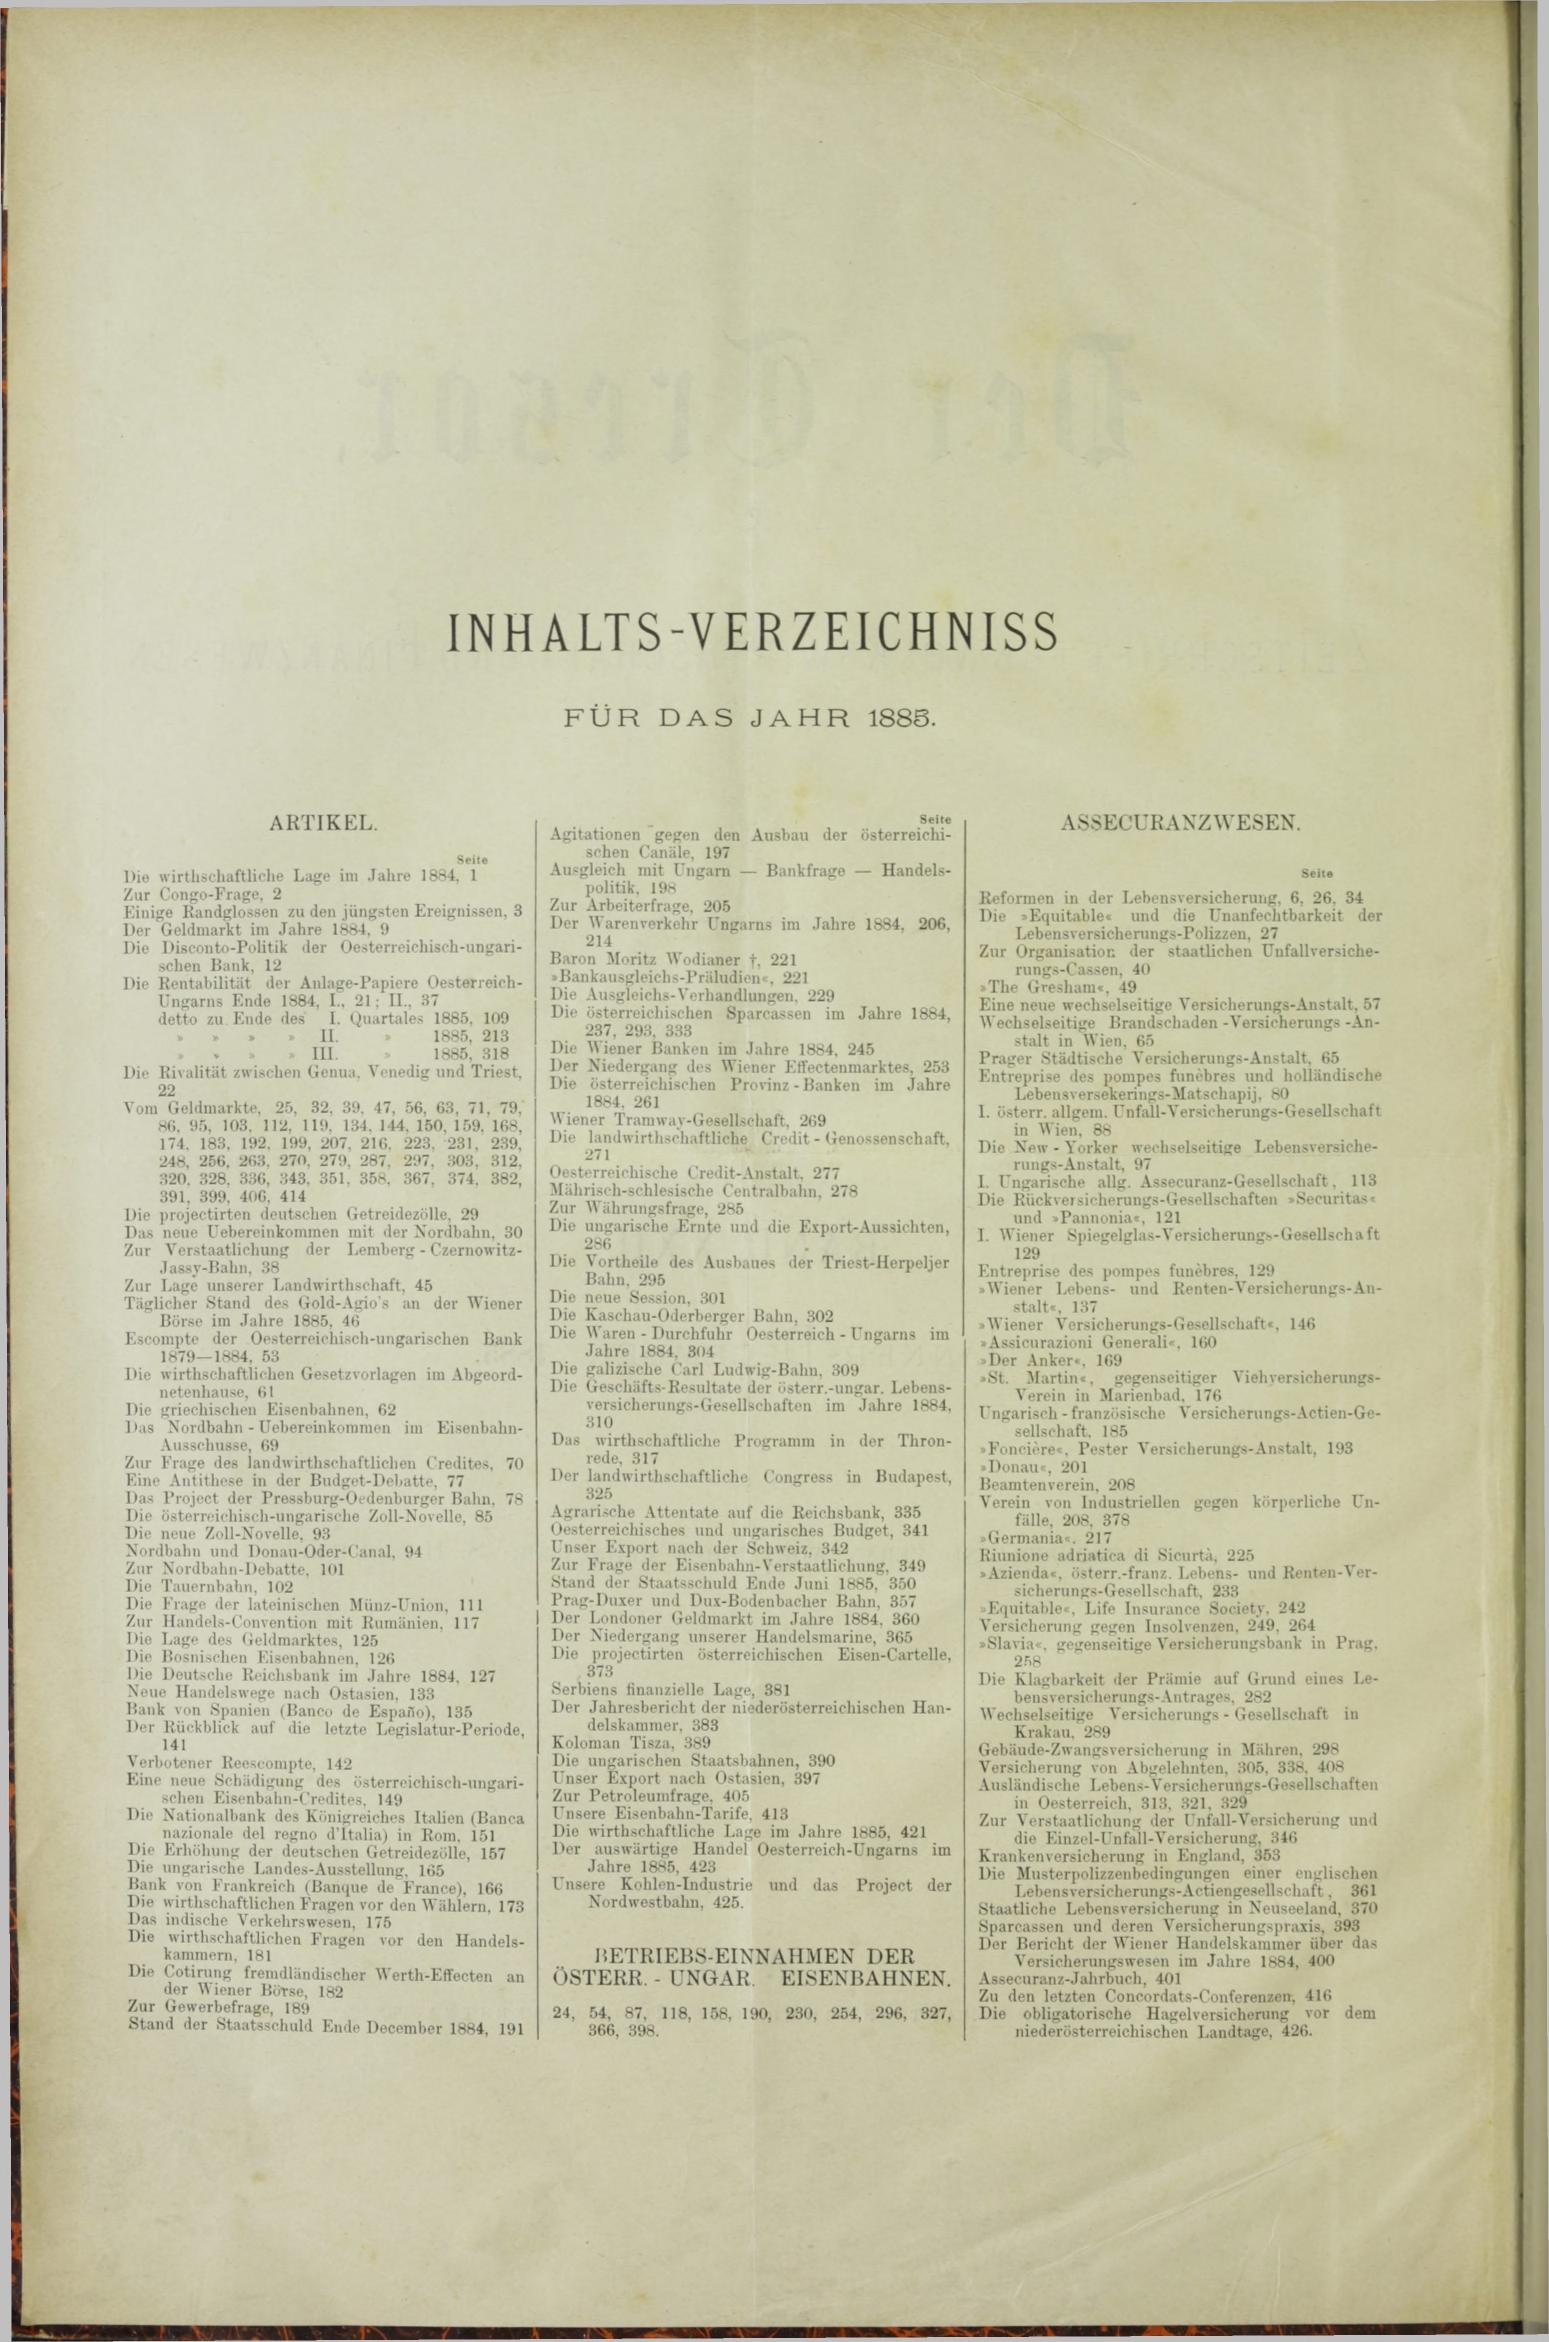 Der Tresor 16.04.1885 - Seite 10